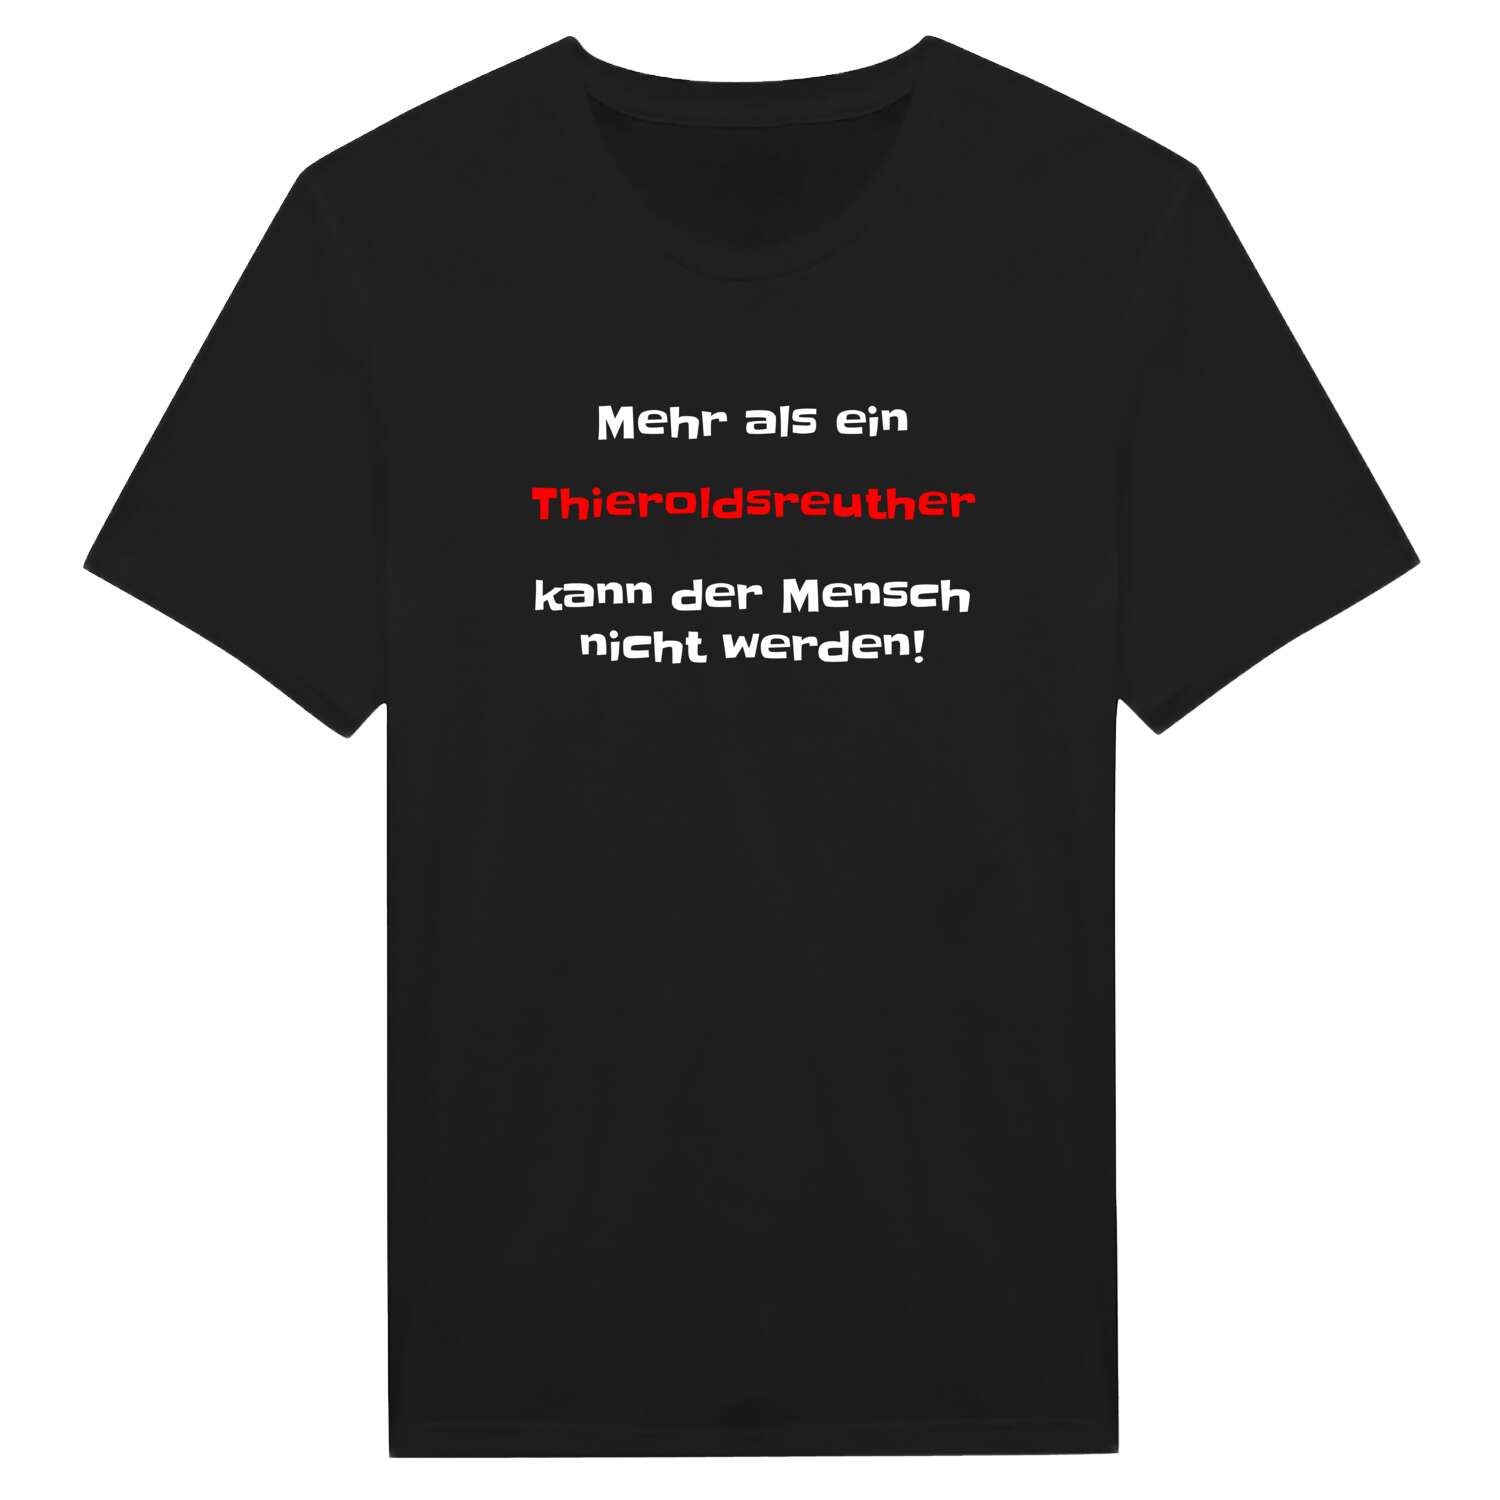 Thieroldsreuth T-Shirt »Mehr als ein«